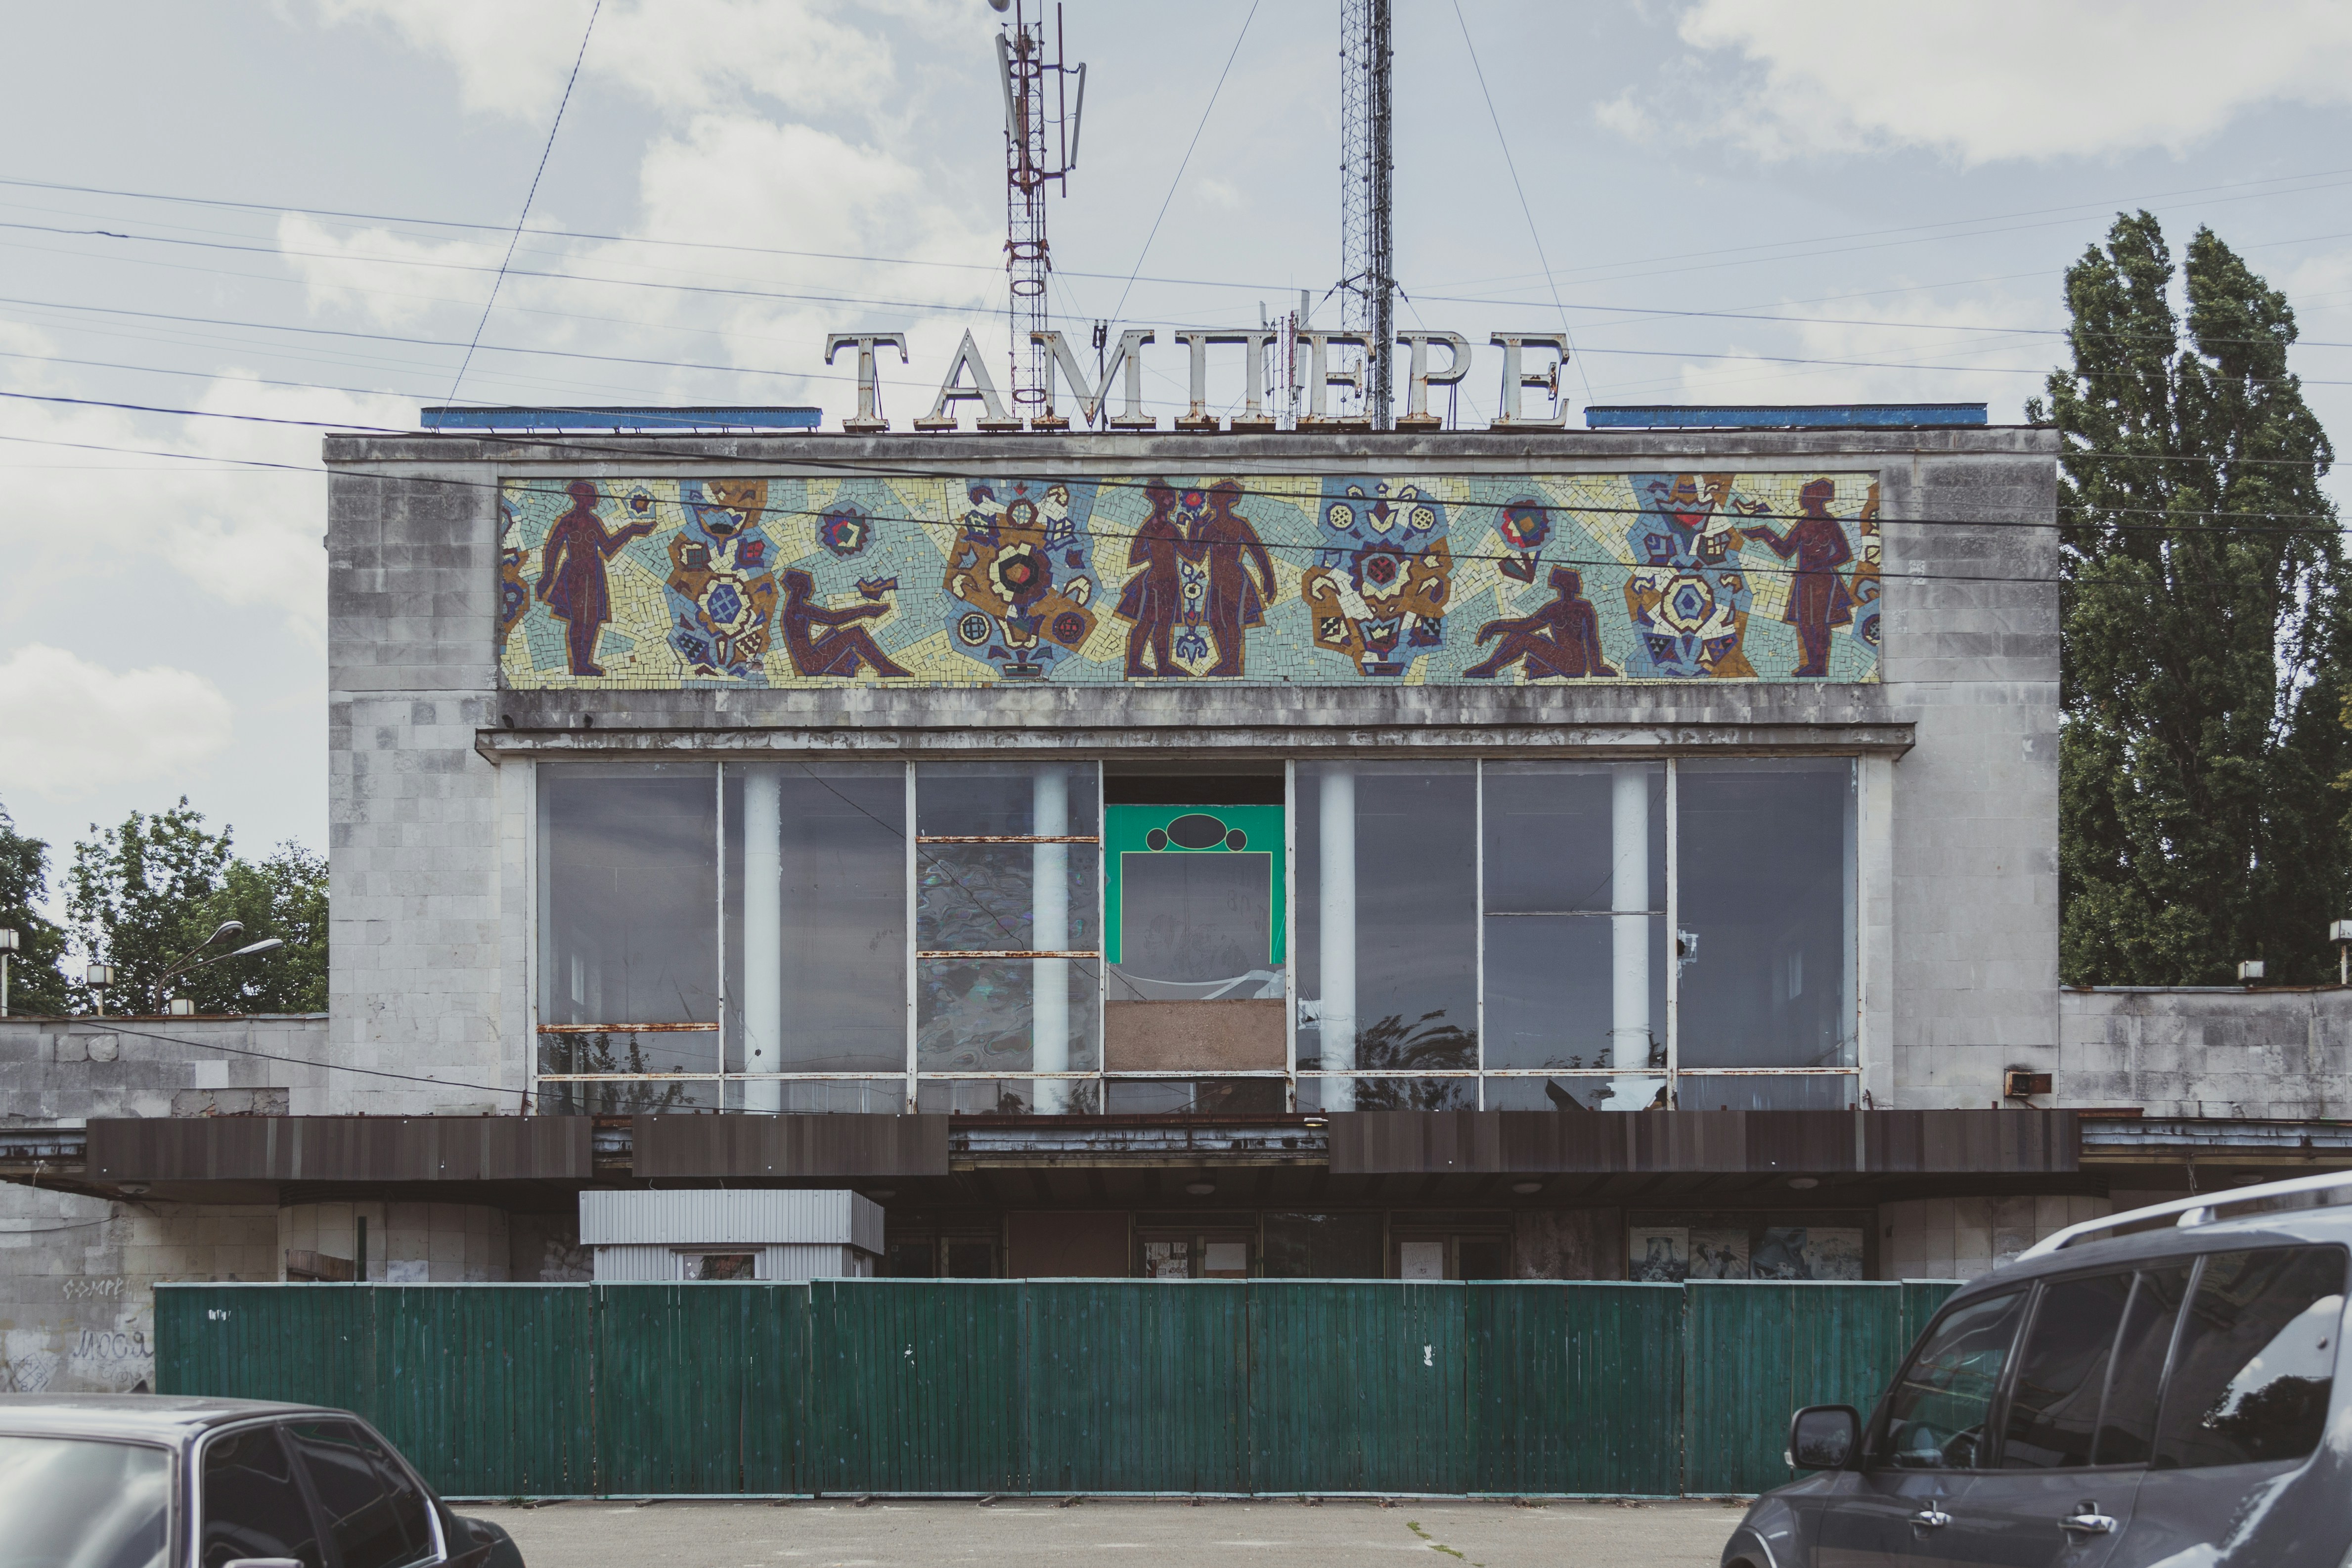 Кинотеатр «Тампере» (ул. Героев Севастополя, 42. Отрадный). Построен в 1967 году. Назван в честь финского города-побратима Киева. В настоящее время (2019) находится в аварийном состоянии. Здание из коммунальной собственности перешло в собственность оффшорных компаний.